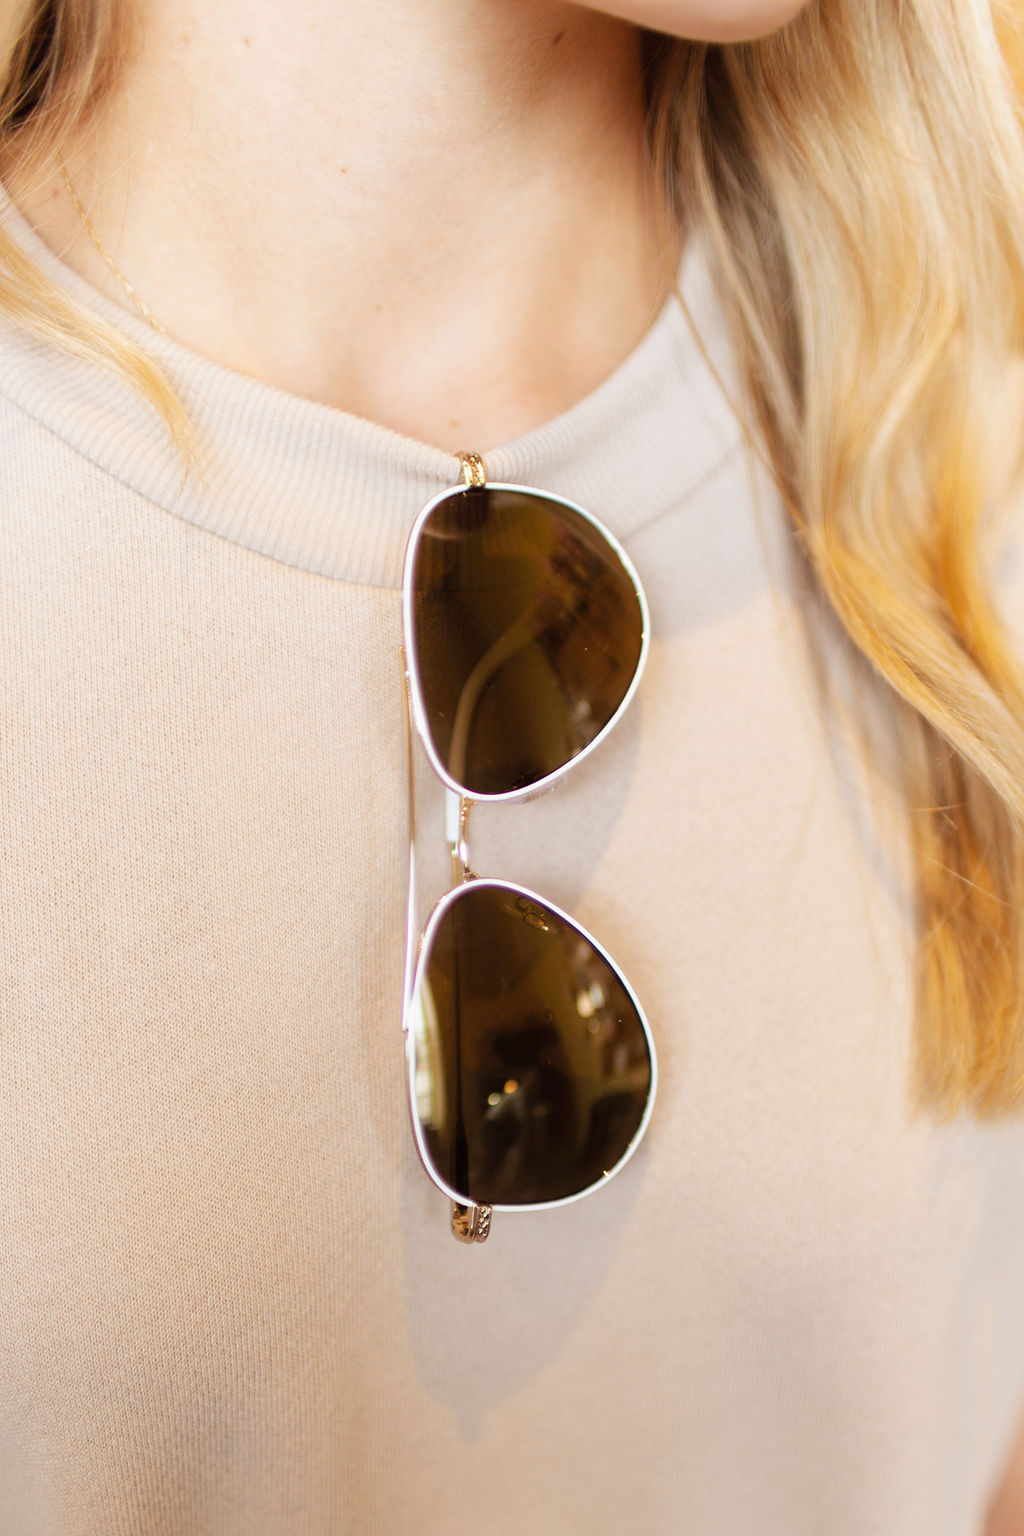 White Frame // Gold Lens // Aviator Sunglasses